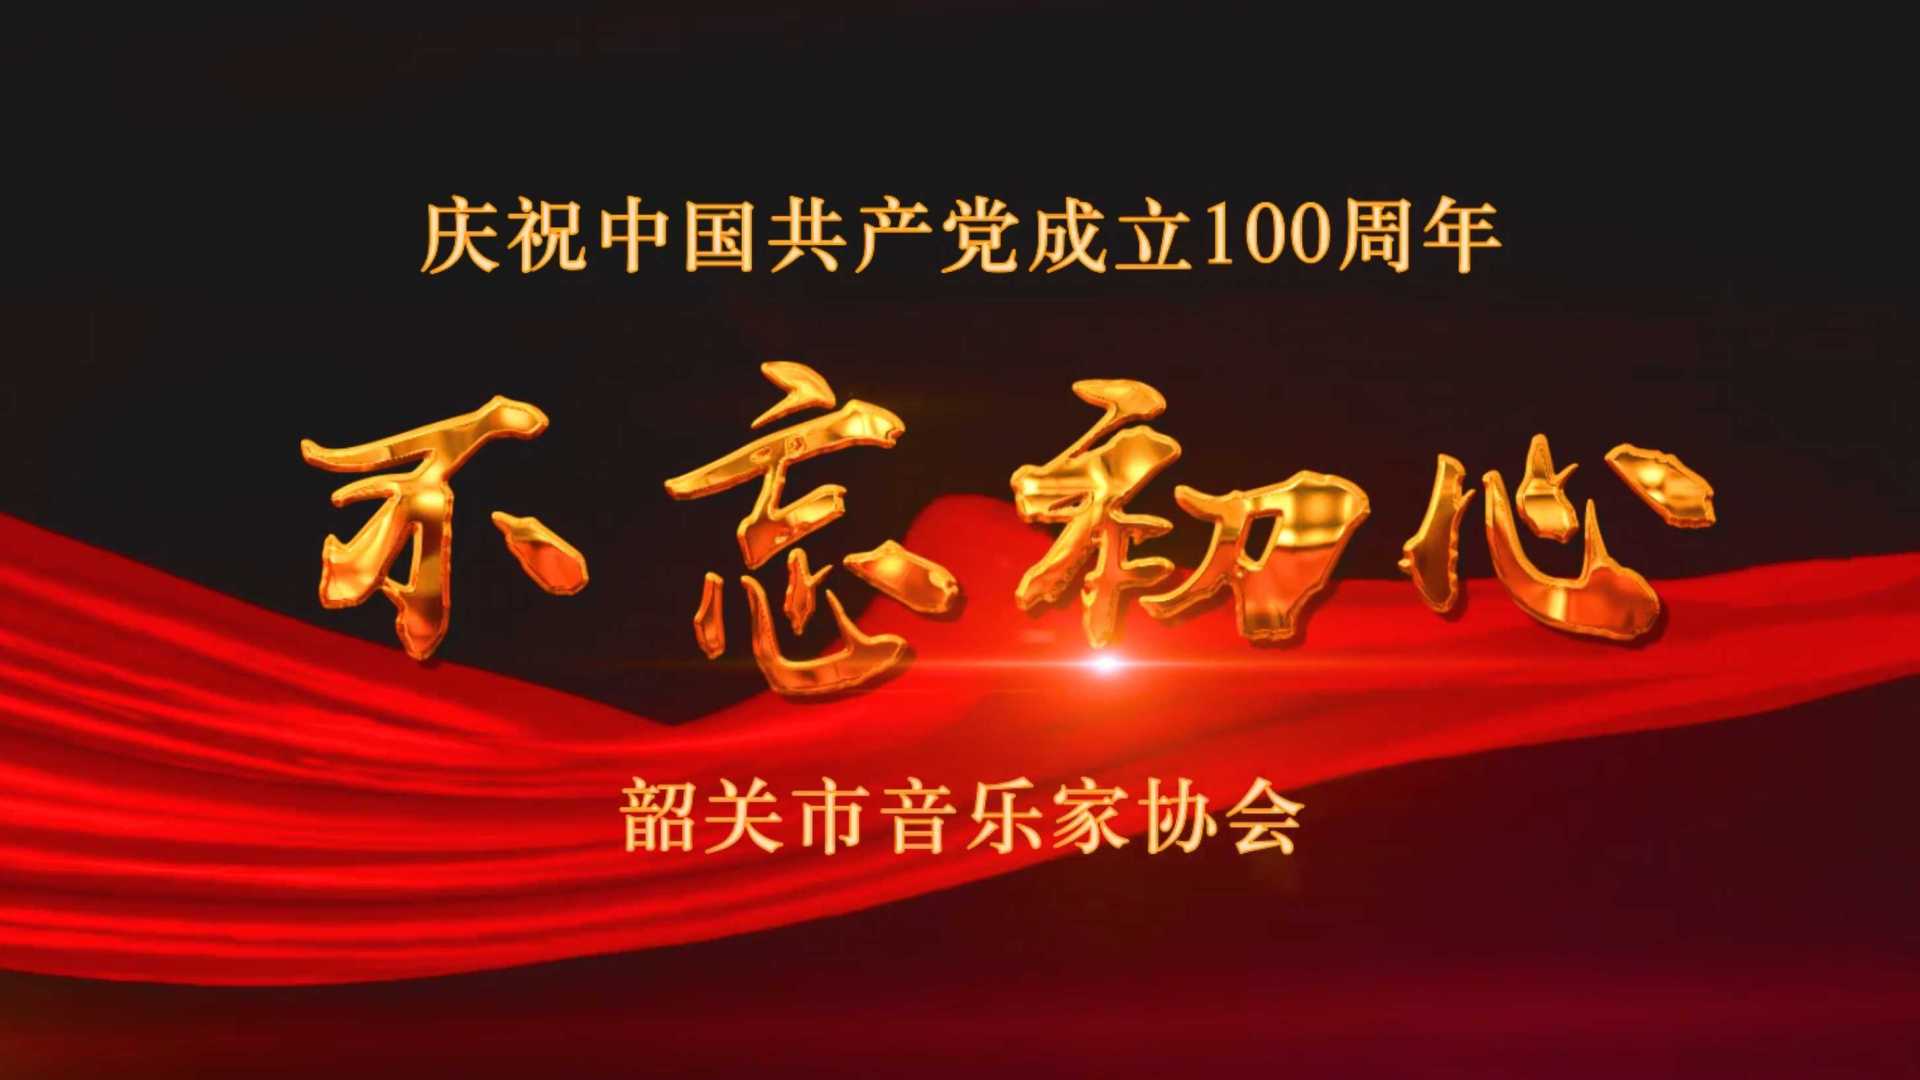 韶关市音乐家协会庆祝中国共产党成立100周年歌曲MV